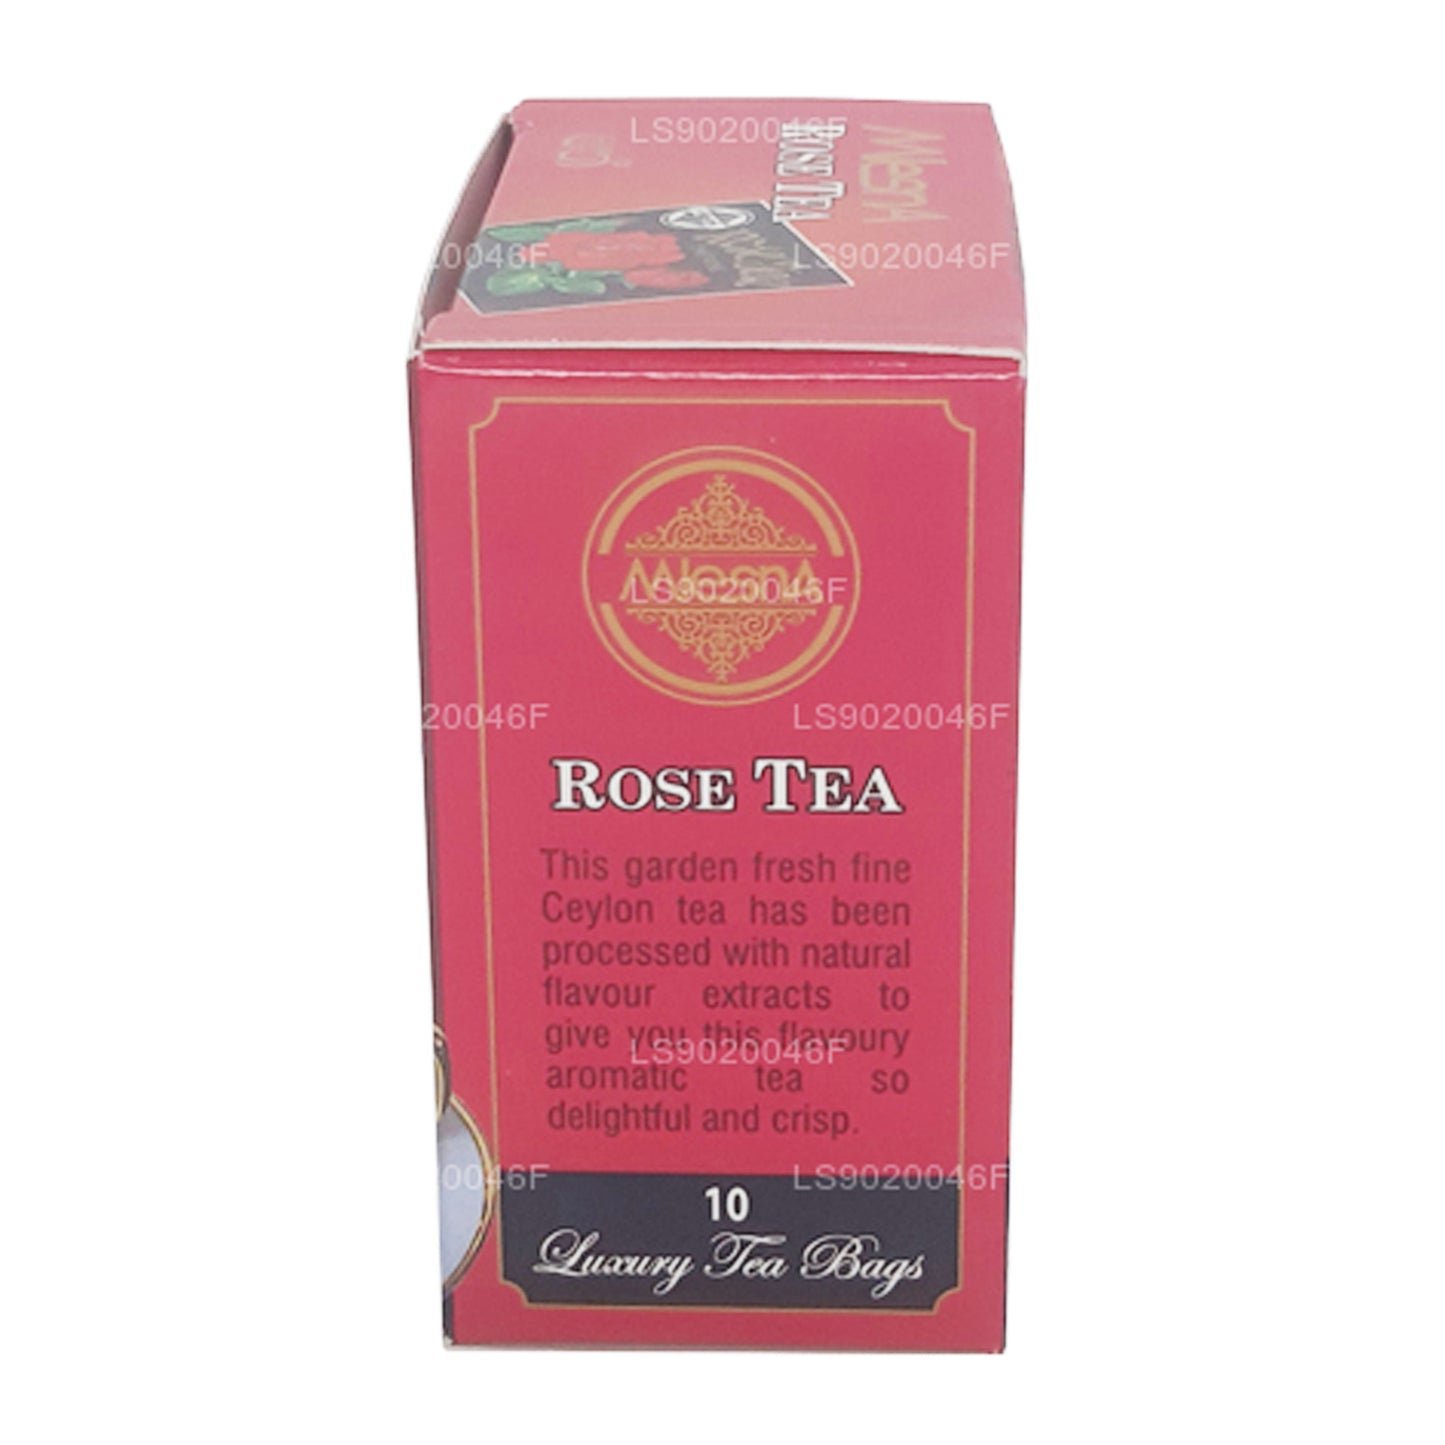 Mlesna Herbata różana (20g) 10 luksusowych torebek herbaty